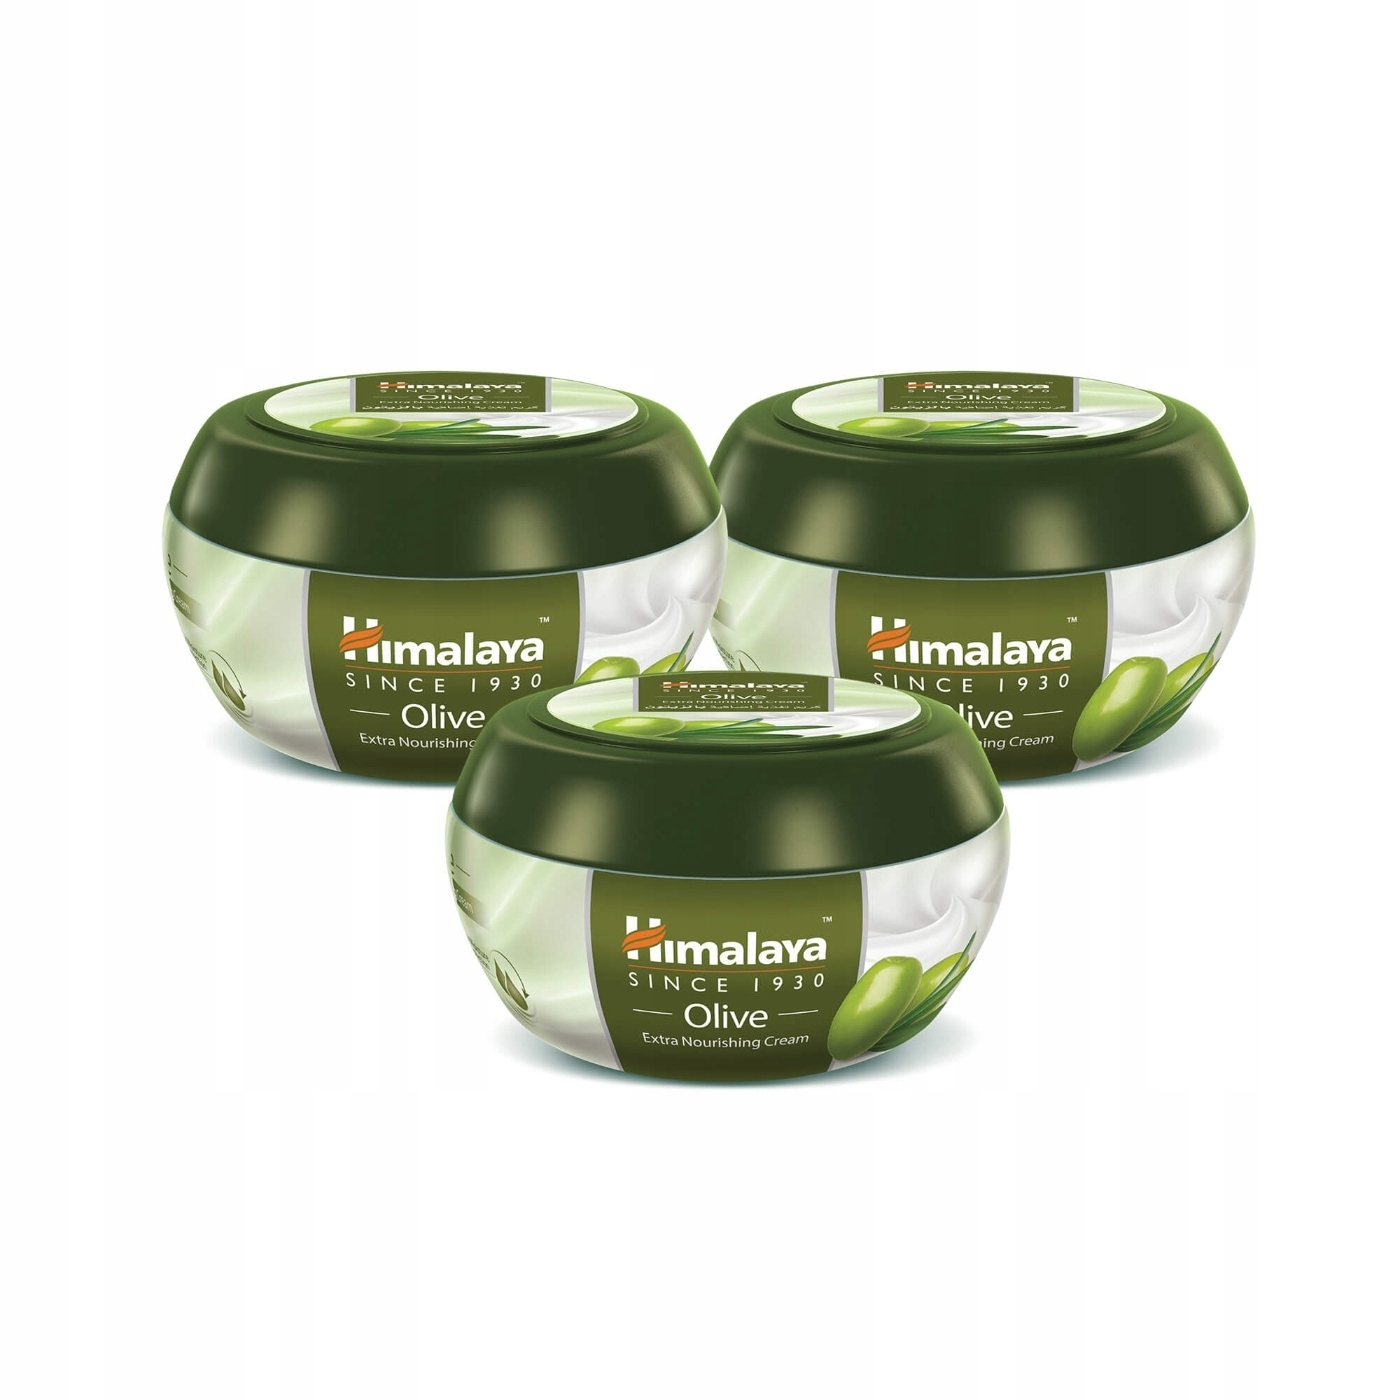 Himalaya Olive Univerzálny olivový výživný krém na tvár tela 50 ml 3op